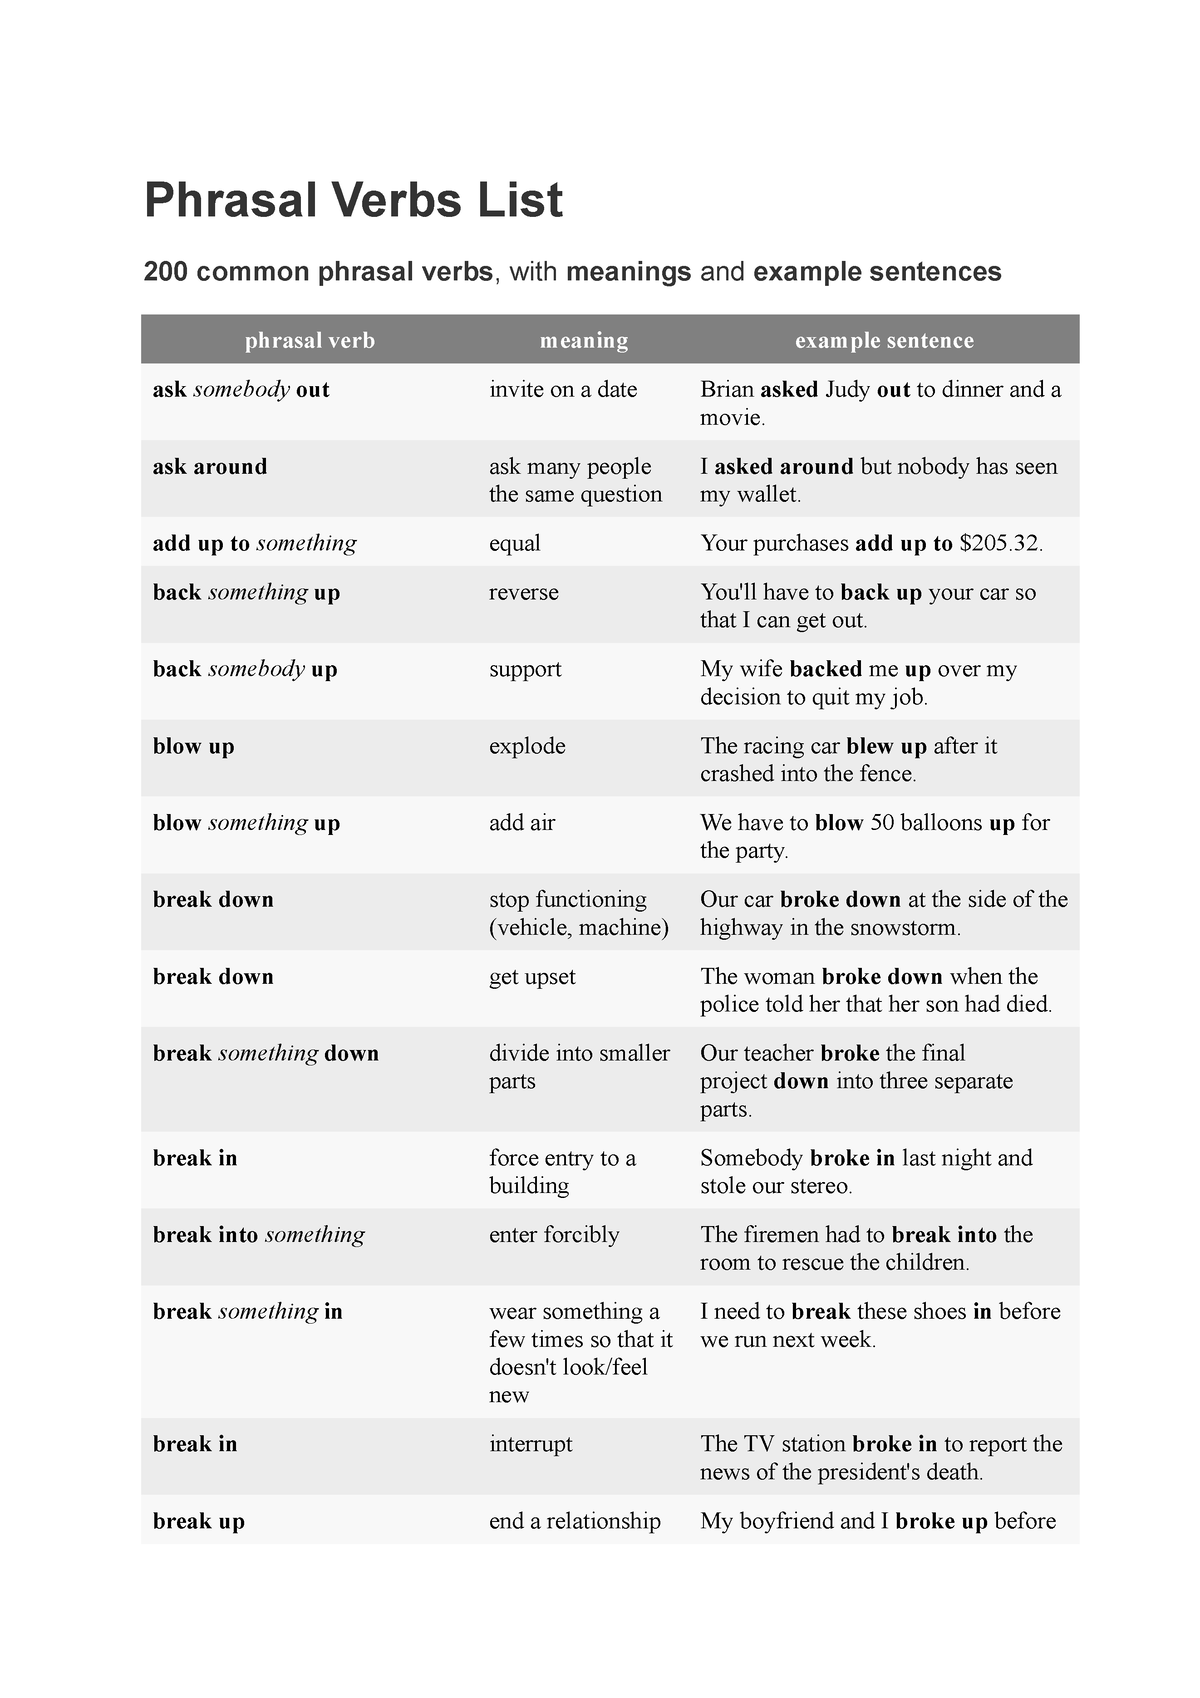 phrasal-verbs-list-skills-test-1-phrasal-verbs-list-200-common